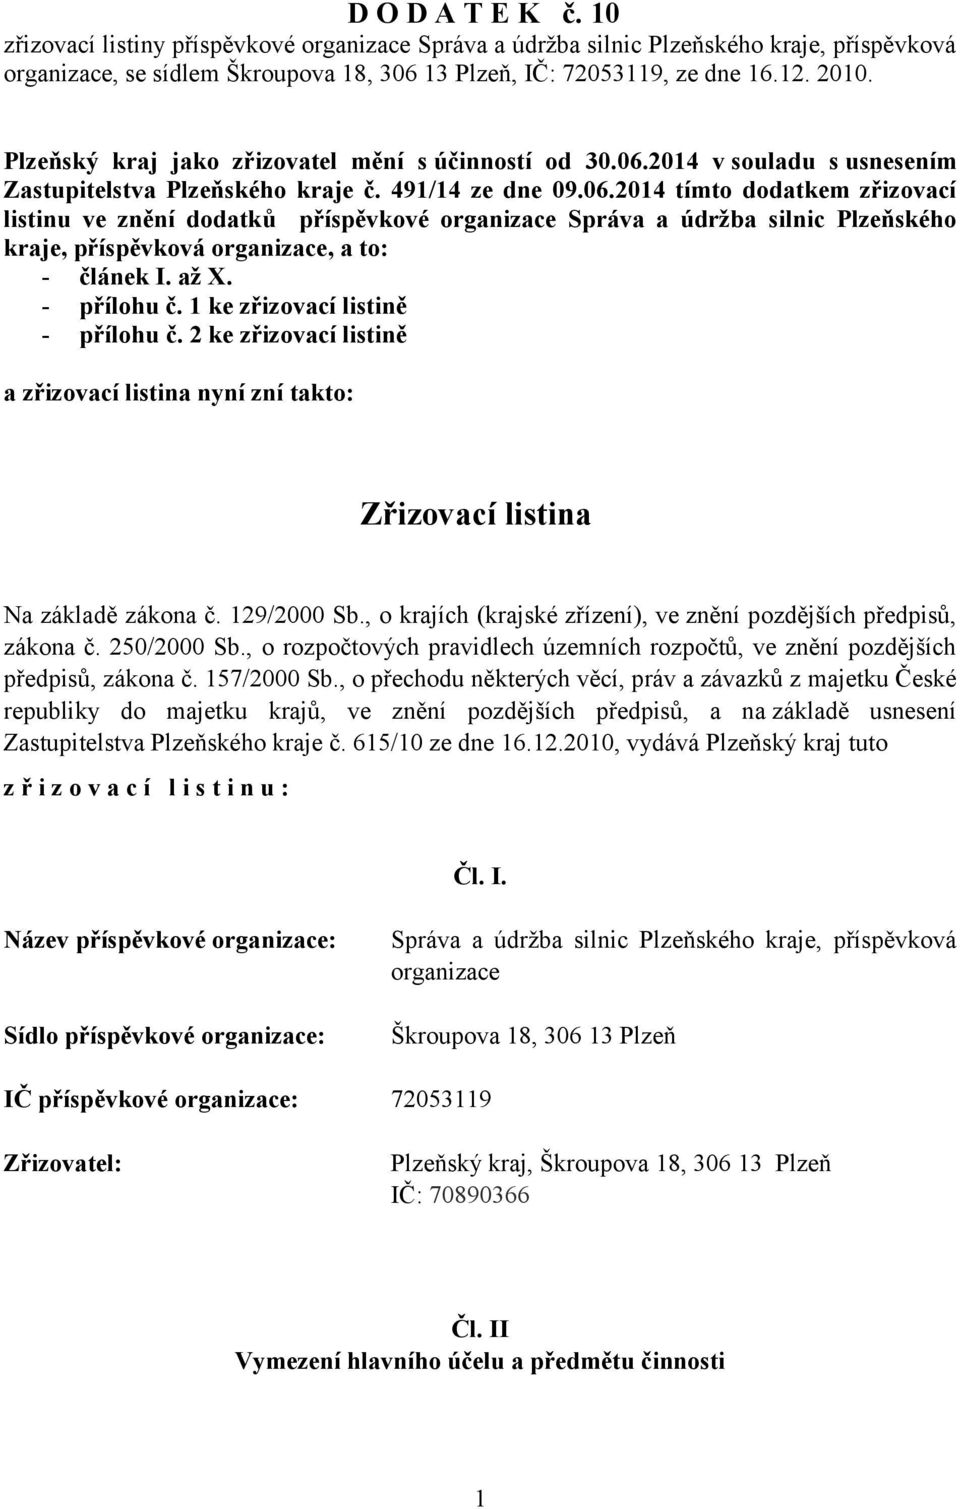 2014 v souladu s usnesením Zastupitelstva Plzeňského kraje č. 491/14 ze dne 09.06.